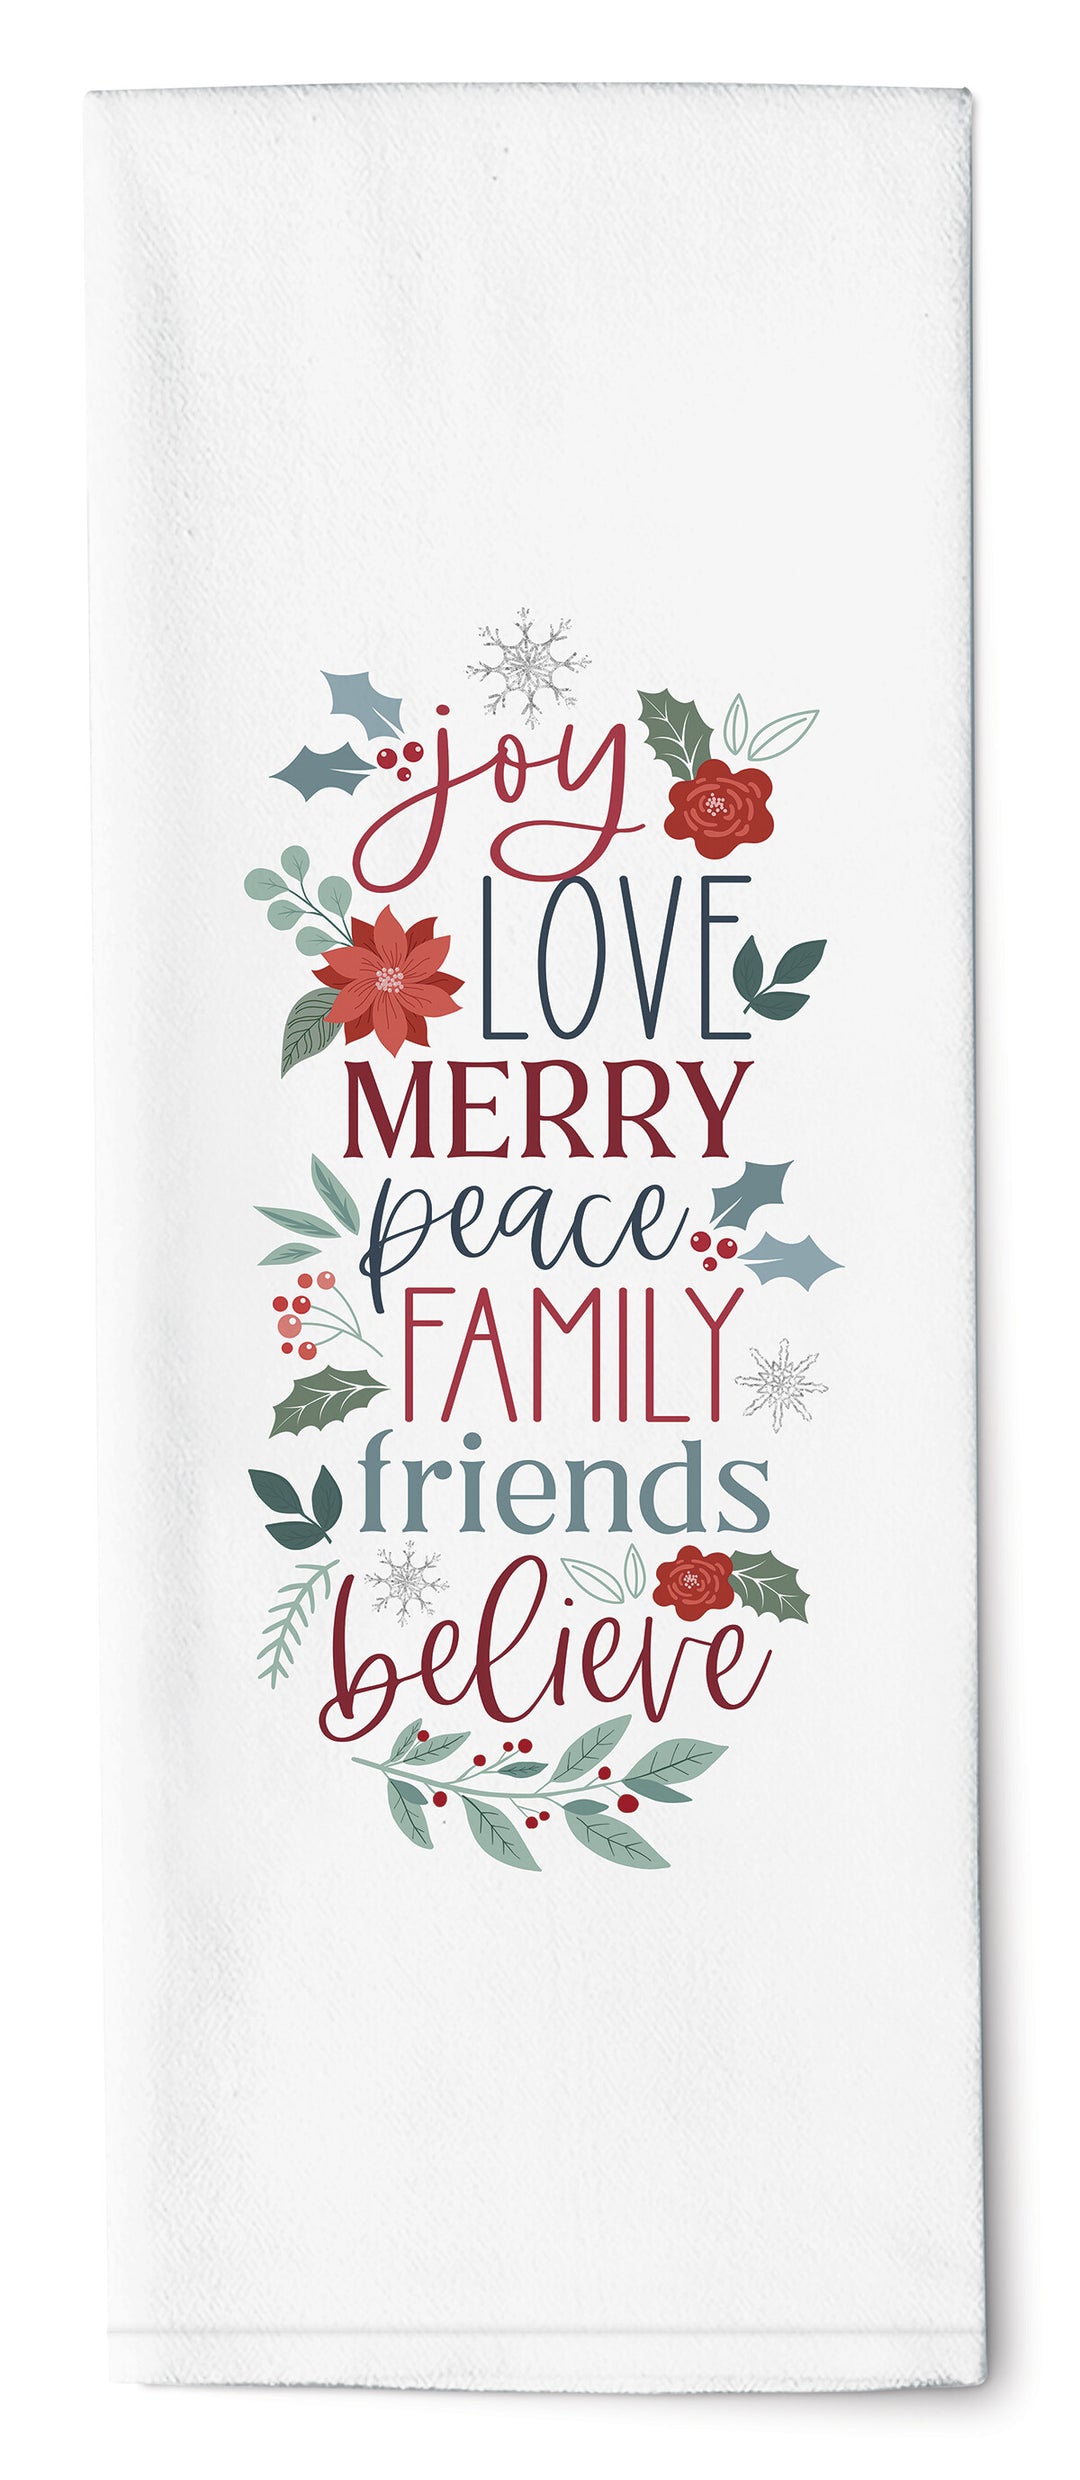 Joy, Love, Merry, Peace, Family, Friends, Believe